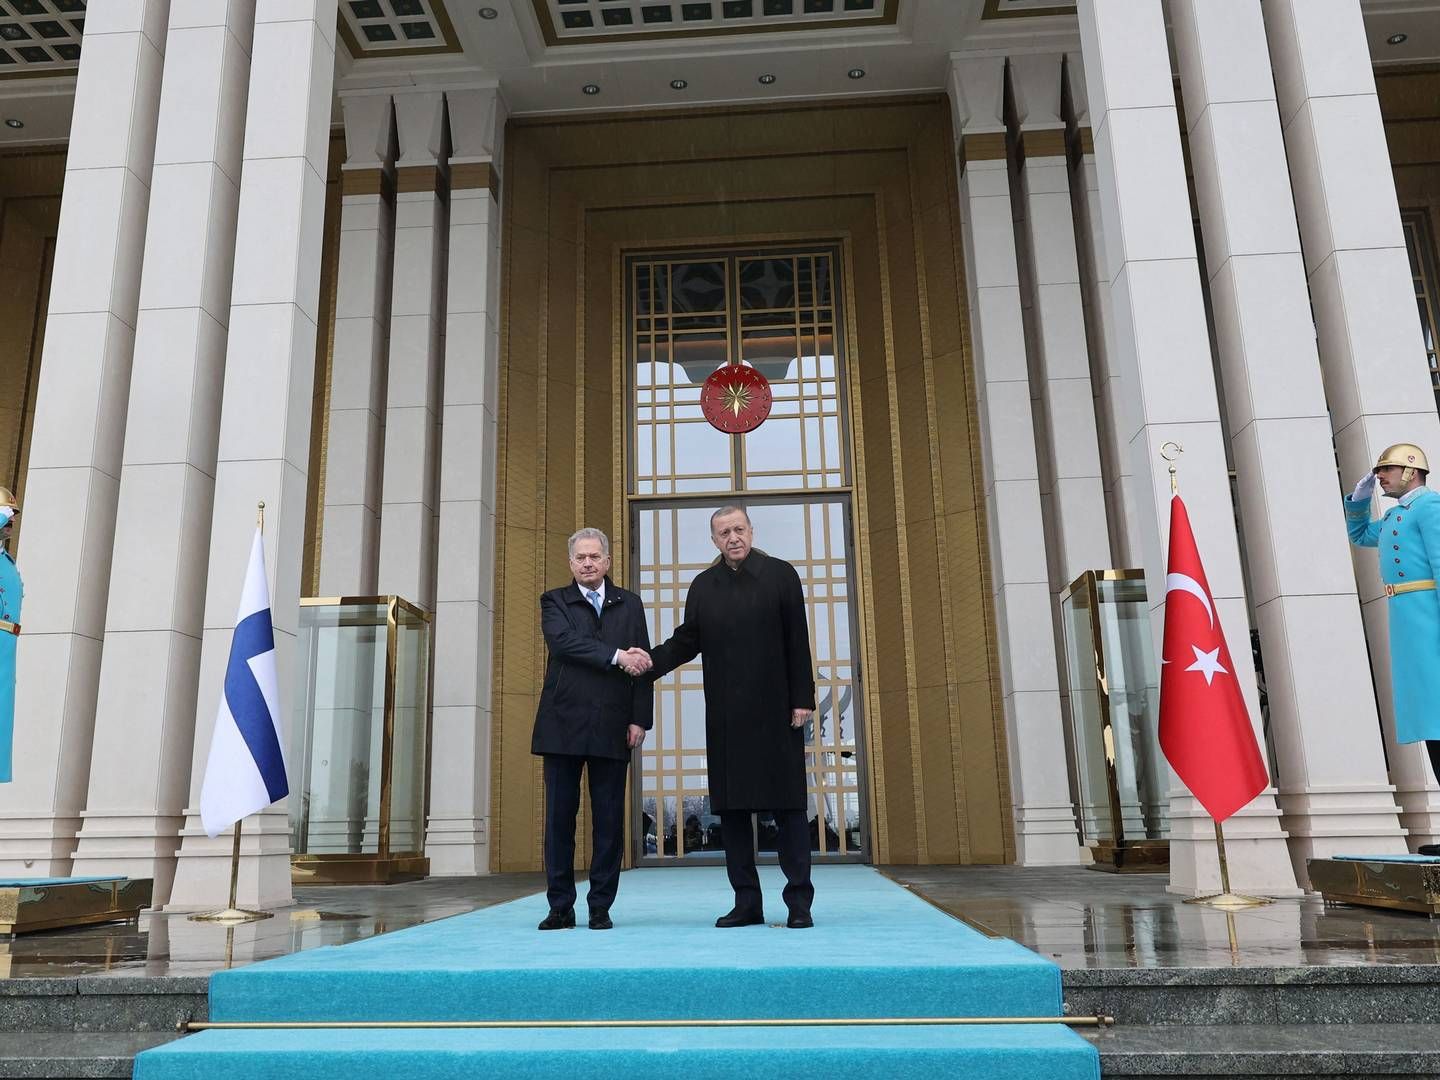 Den tyrkiske præsident Recep Tayyip Erdogan og den finske præsident Sauli Niinisto giver hånd om et fremtidigt samarbejde i Nato-regi i Ankara i Tyrkiet 17. marts 2023. | Foto: Adem Altan